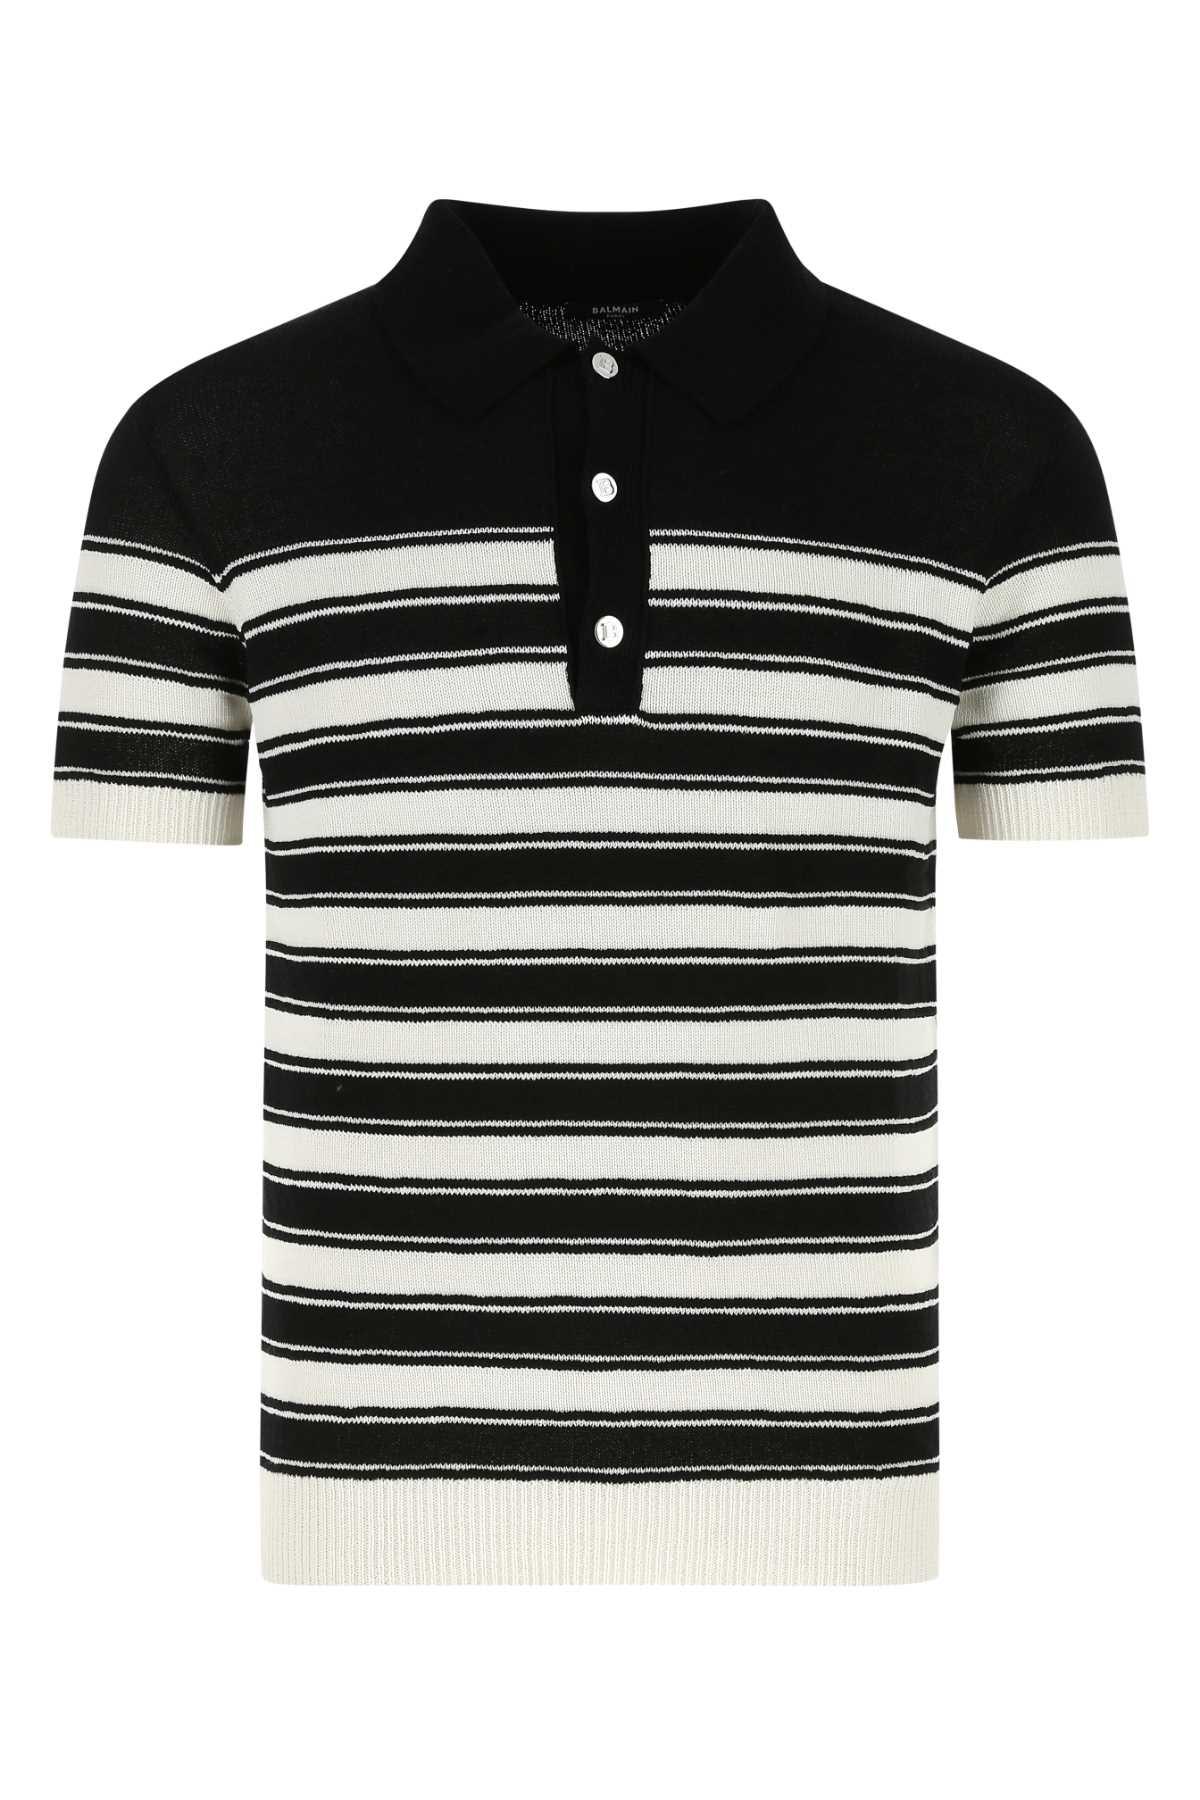 Balmain Striped Knitted Polo Shirt